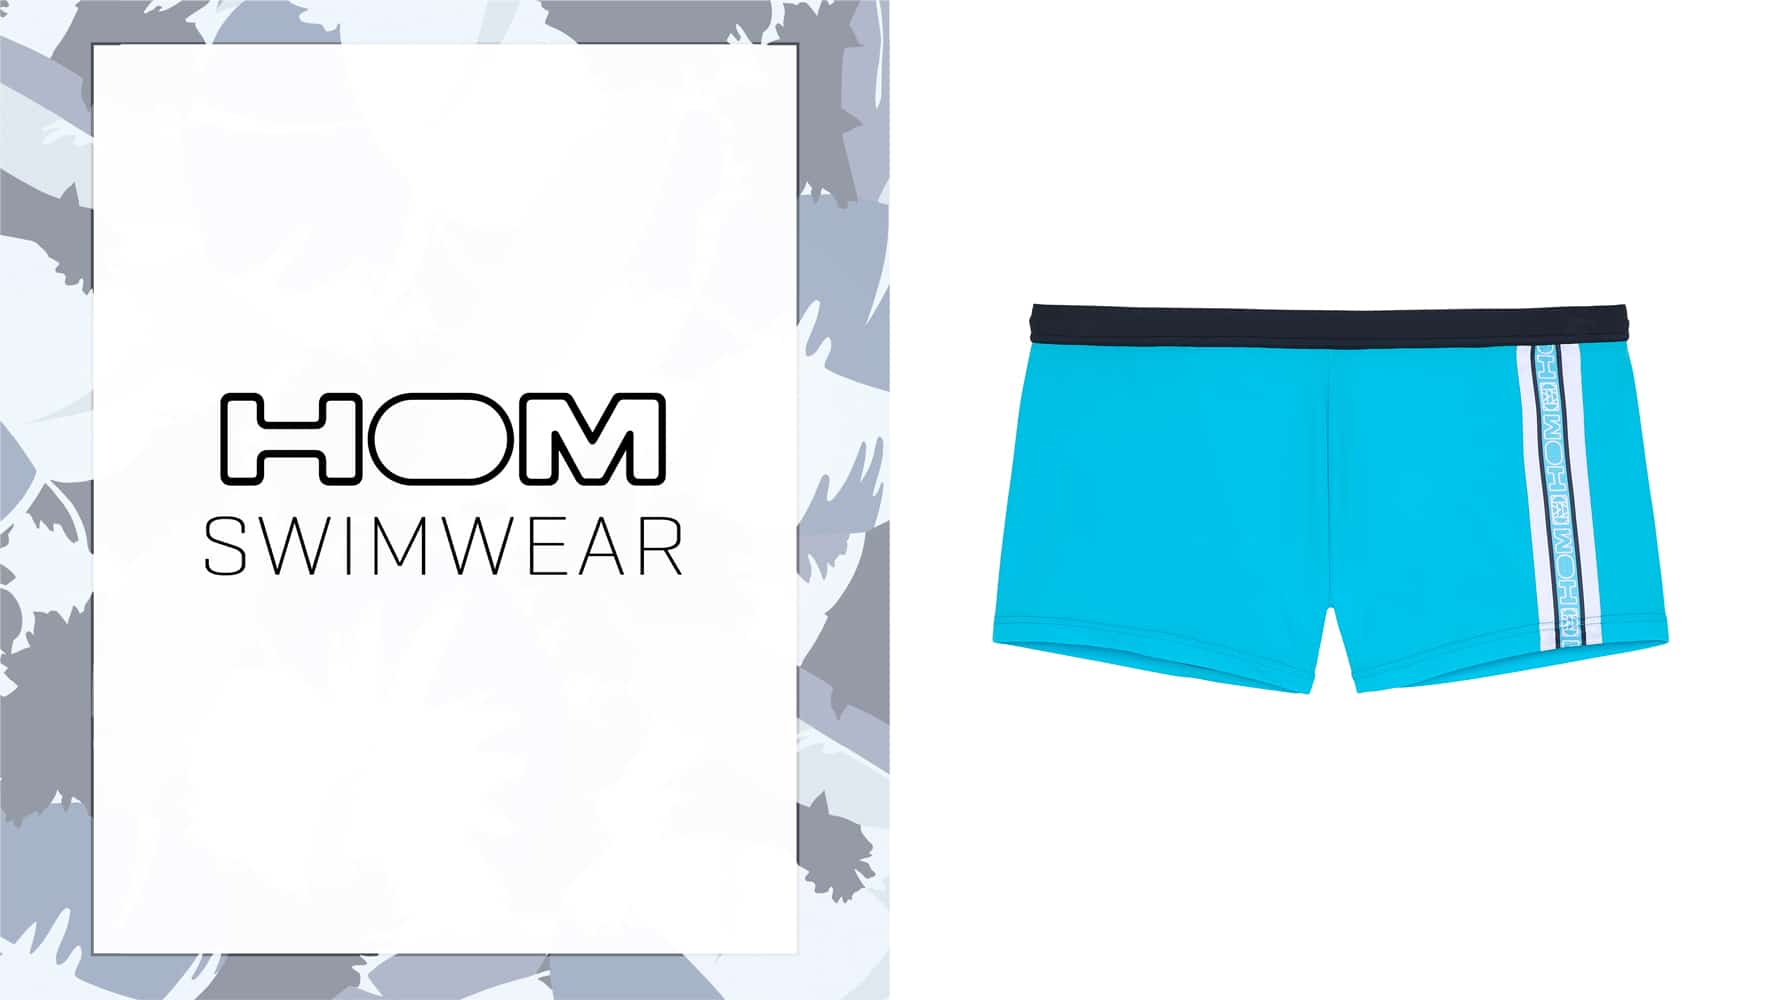 Swim Shorts - Alize - Turquoise